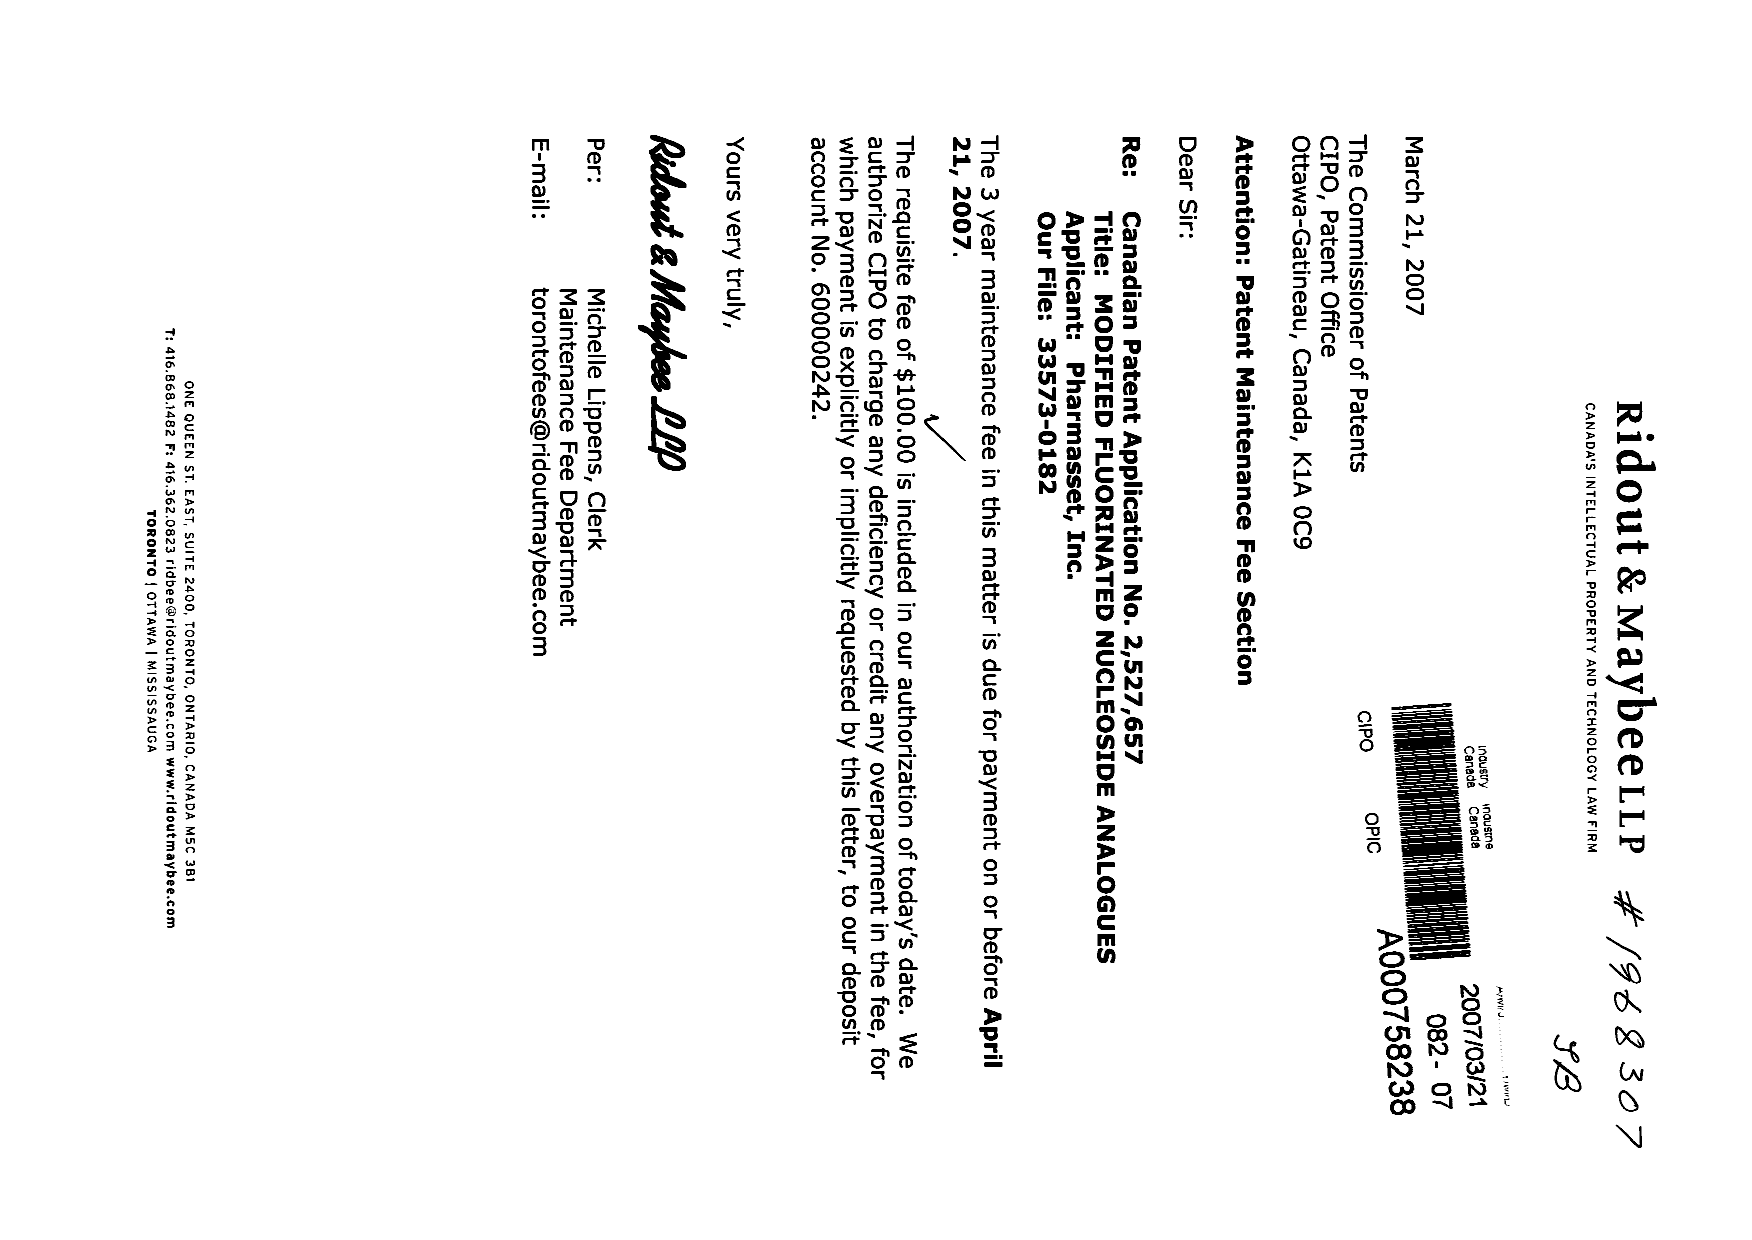 Document de brevet canadien 2527657. Taxes 20061221. Image 1 de 1